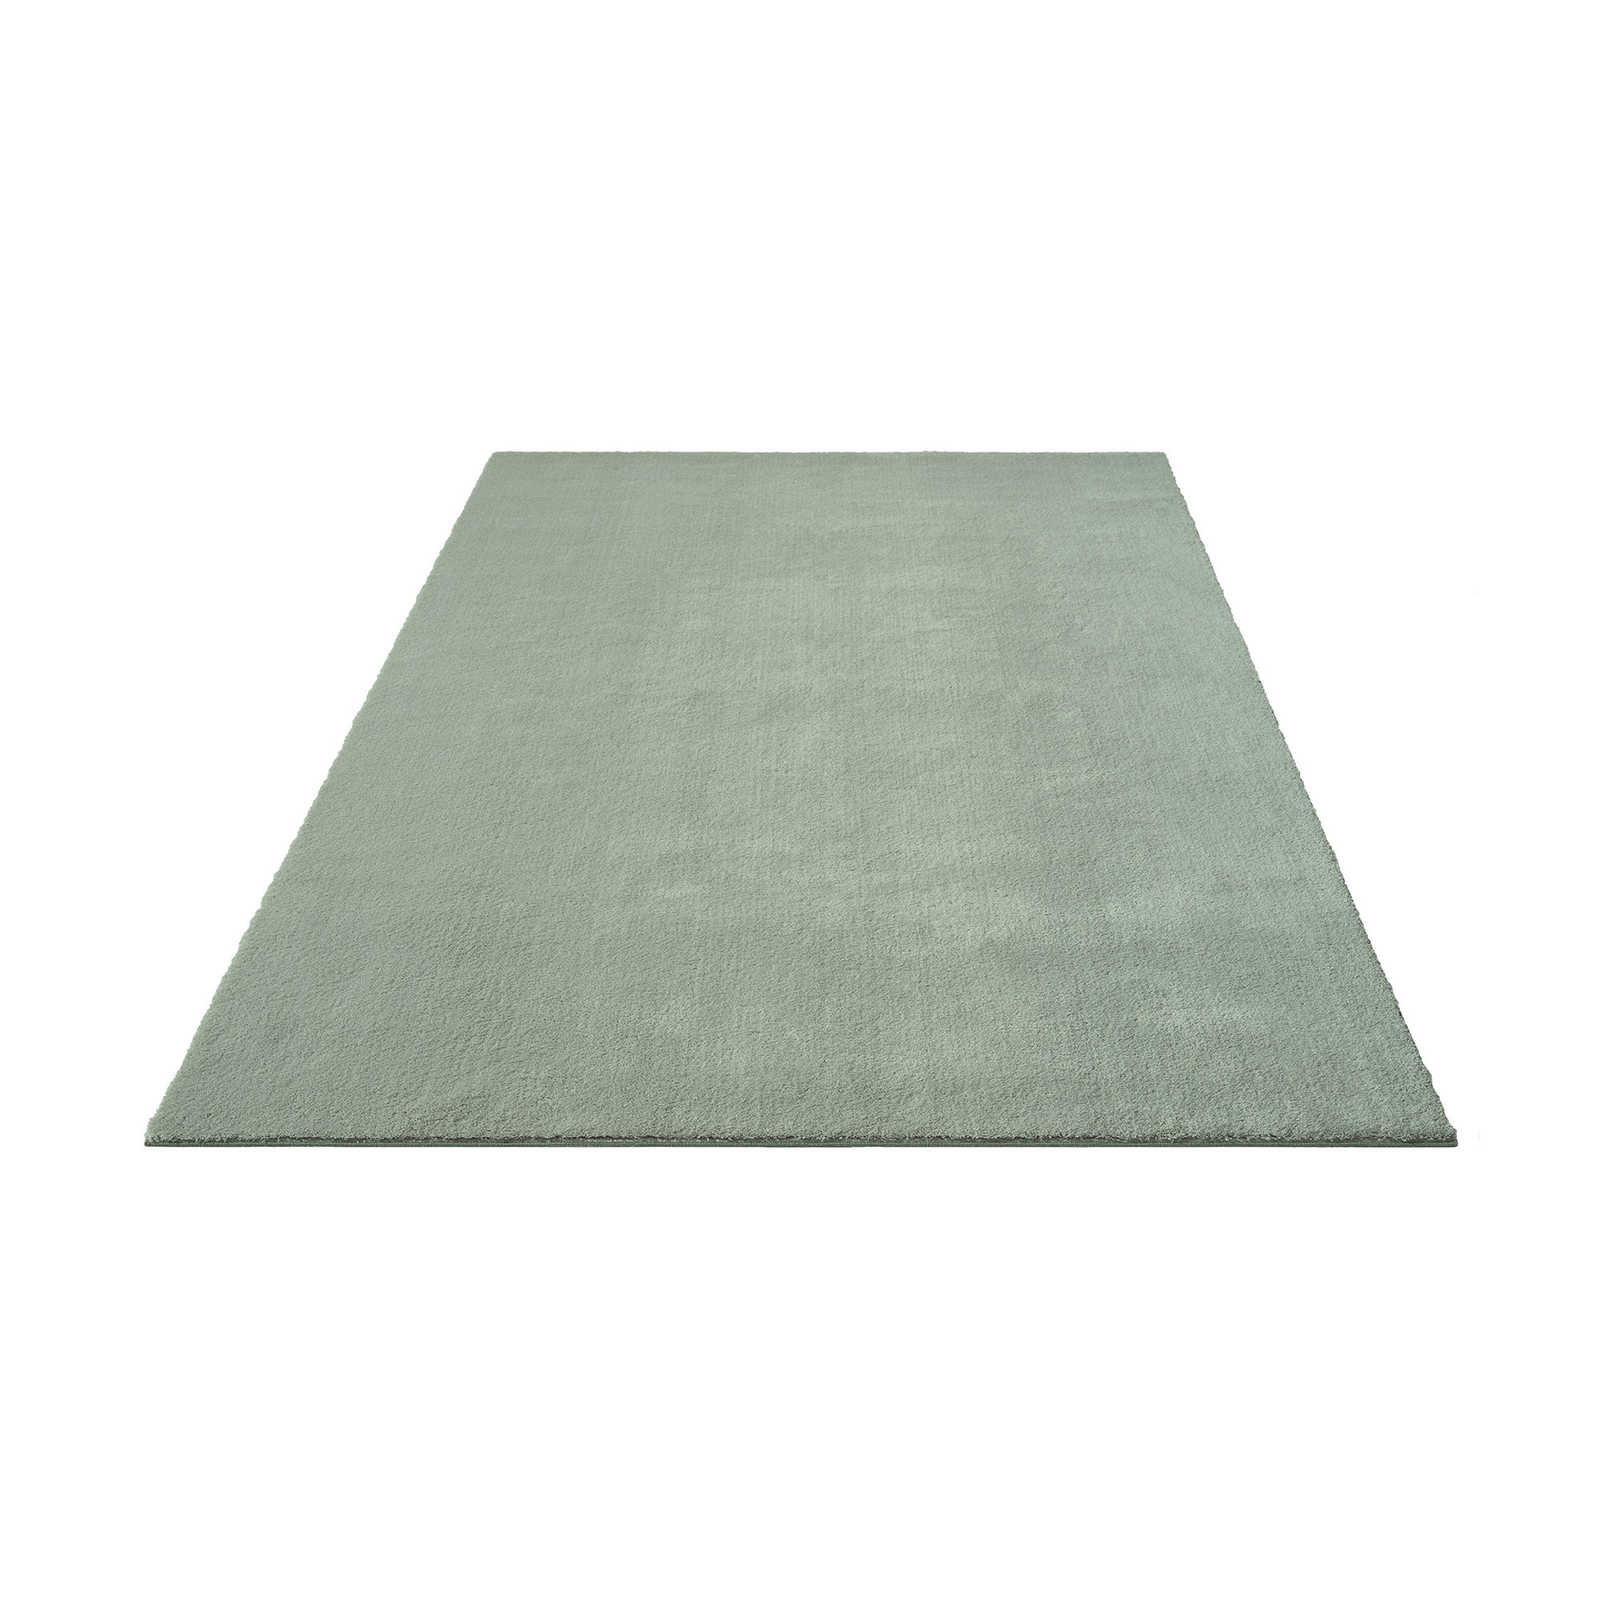 Zacht hoogpolig tapijt in groen - 290 x 200 cm
